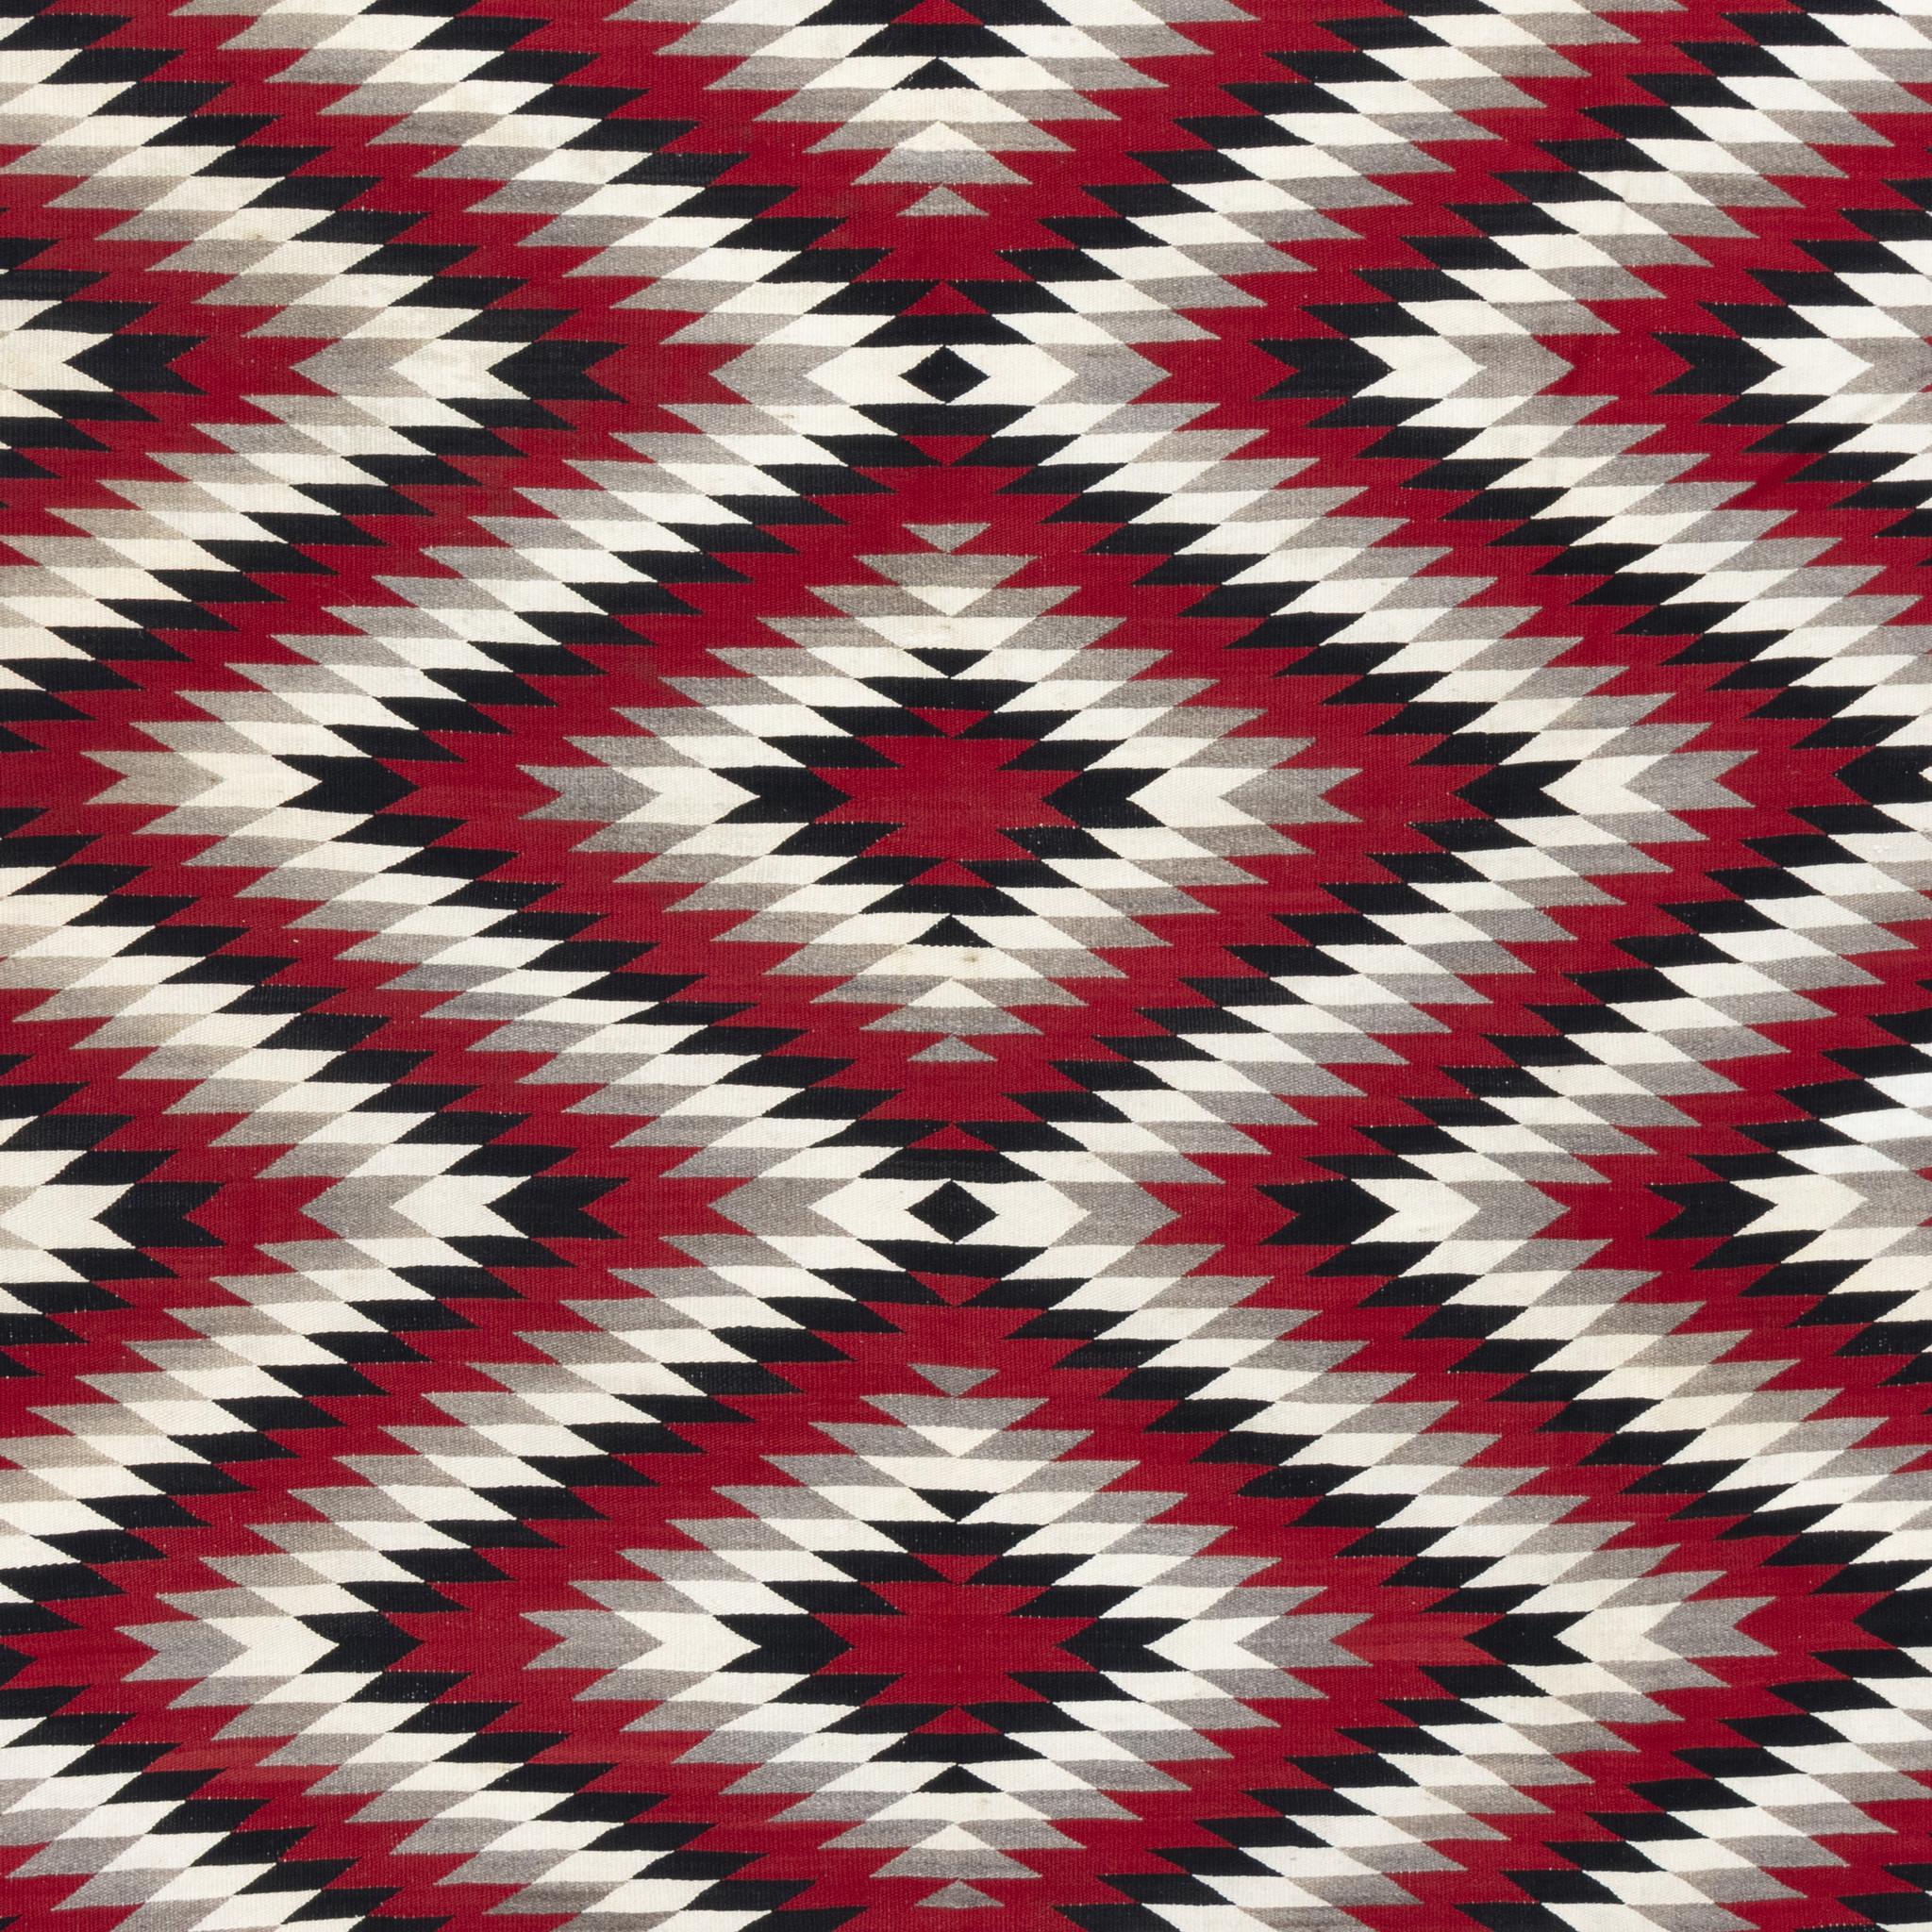 Grand tissage de zone Navajo dazzler. Cette pièce étonnante présente des couleurs vives et contrastées de blanc, de gris, de rouge et de noir dans des motifs géométriques en cristal. Idéal pour un tapis de sol ou une grande pièce murale. Début du